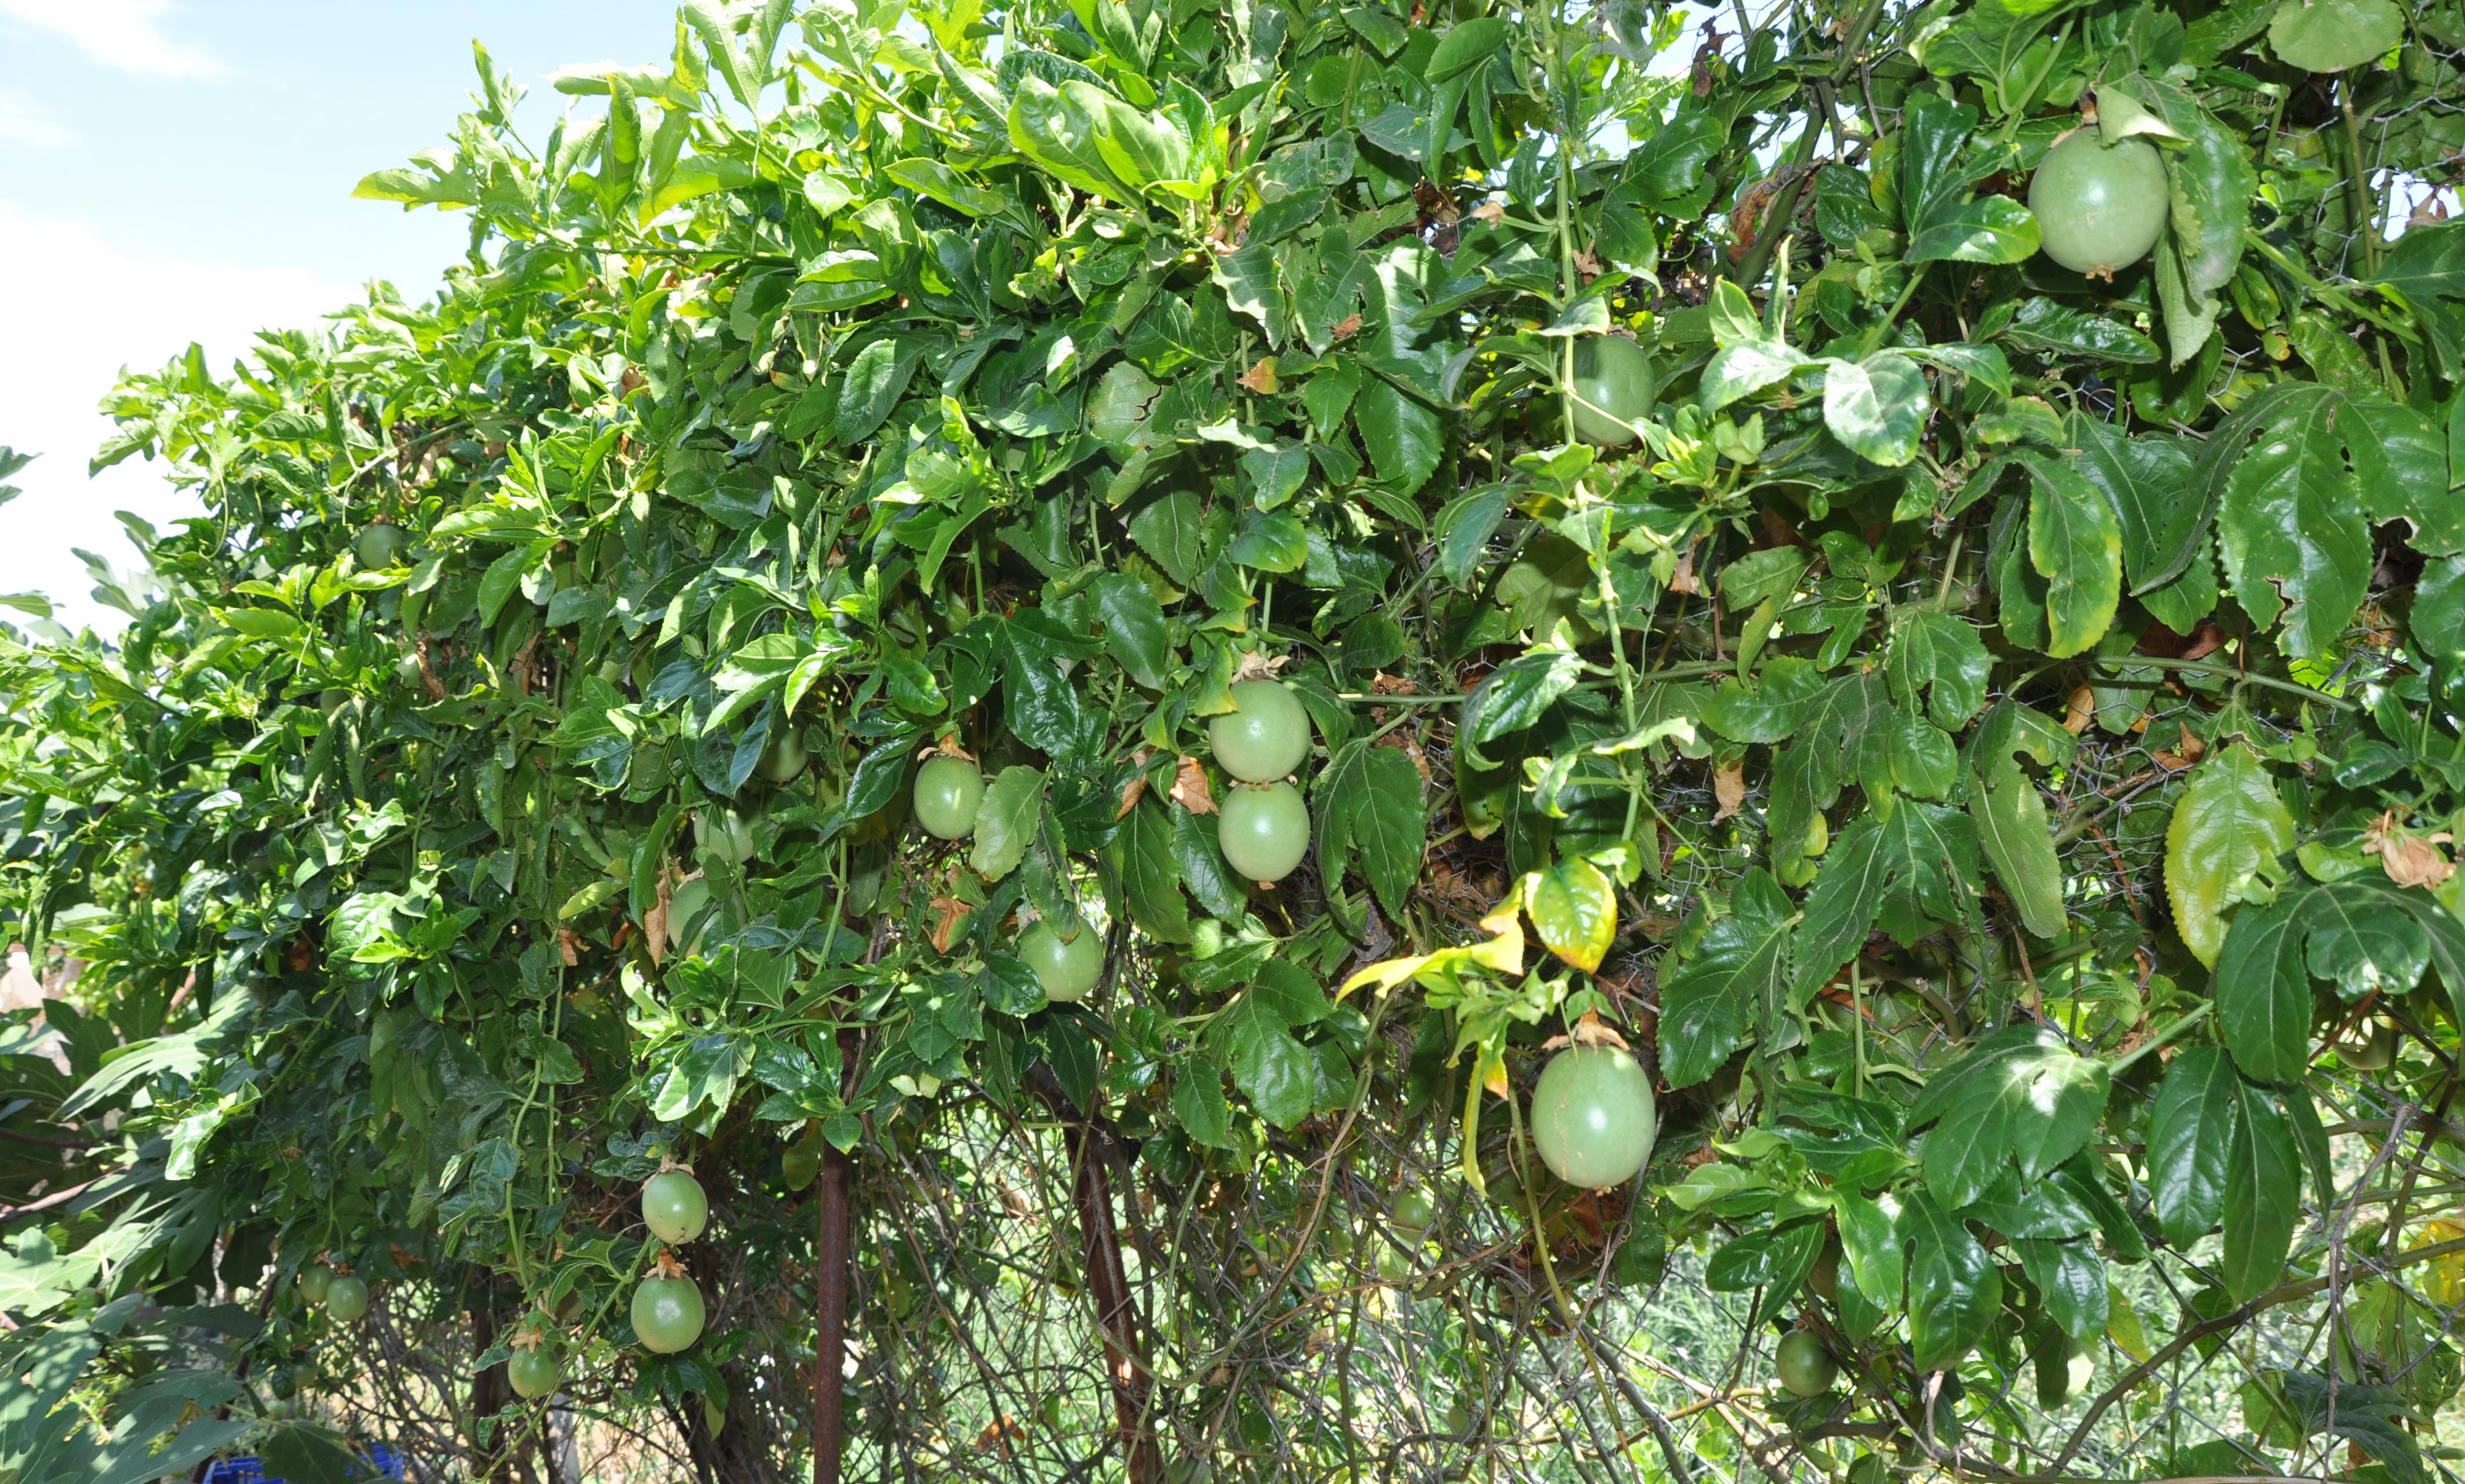 passiflora-unlulerin-gozde-meyvesi-oldu-7042-dhaphoto2.jpg